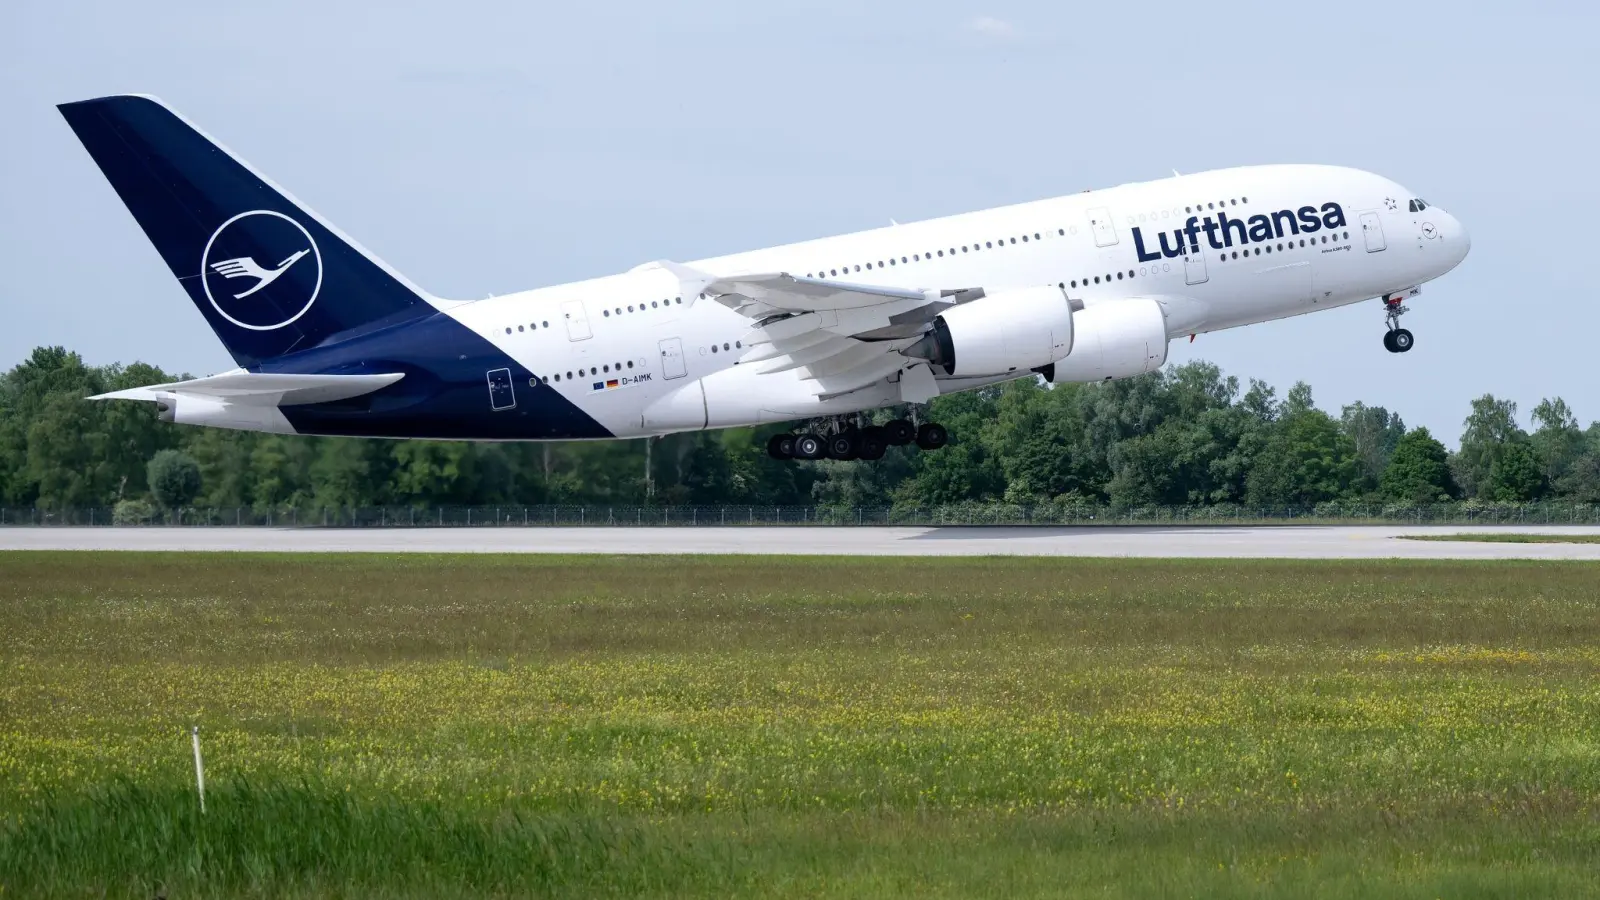 Eine Lufthansa-Maschine des Typs Airbus A380 startet auf dem Flughafen nach Boston. (Foto: Sven Hoppe/dpa)